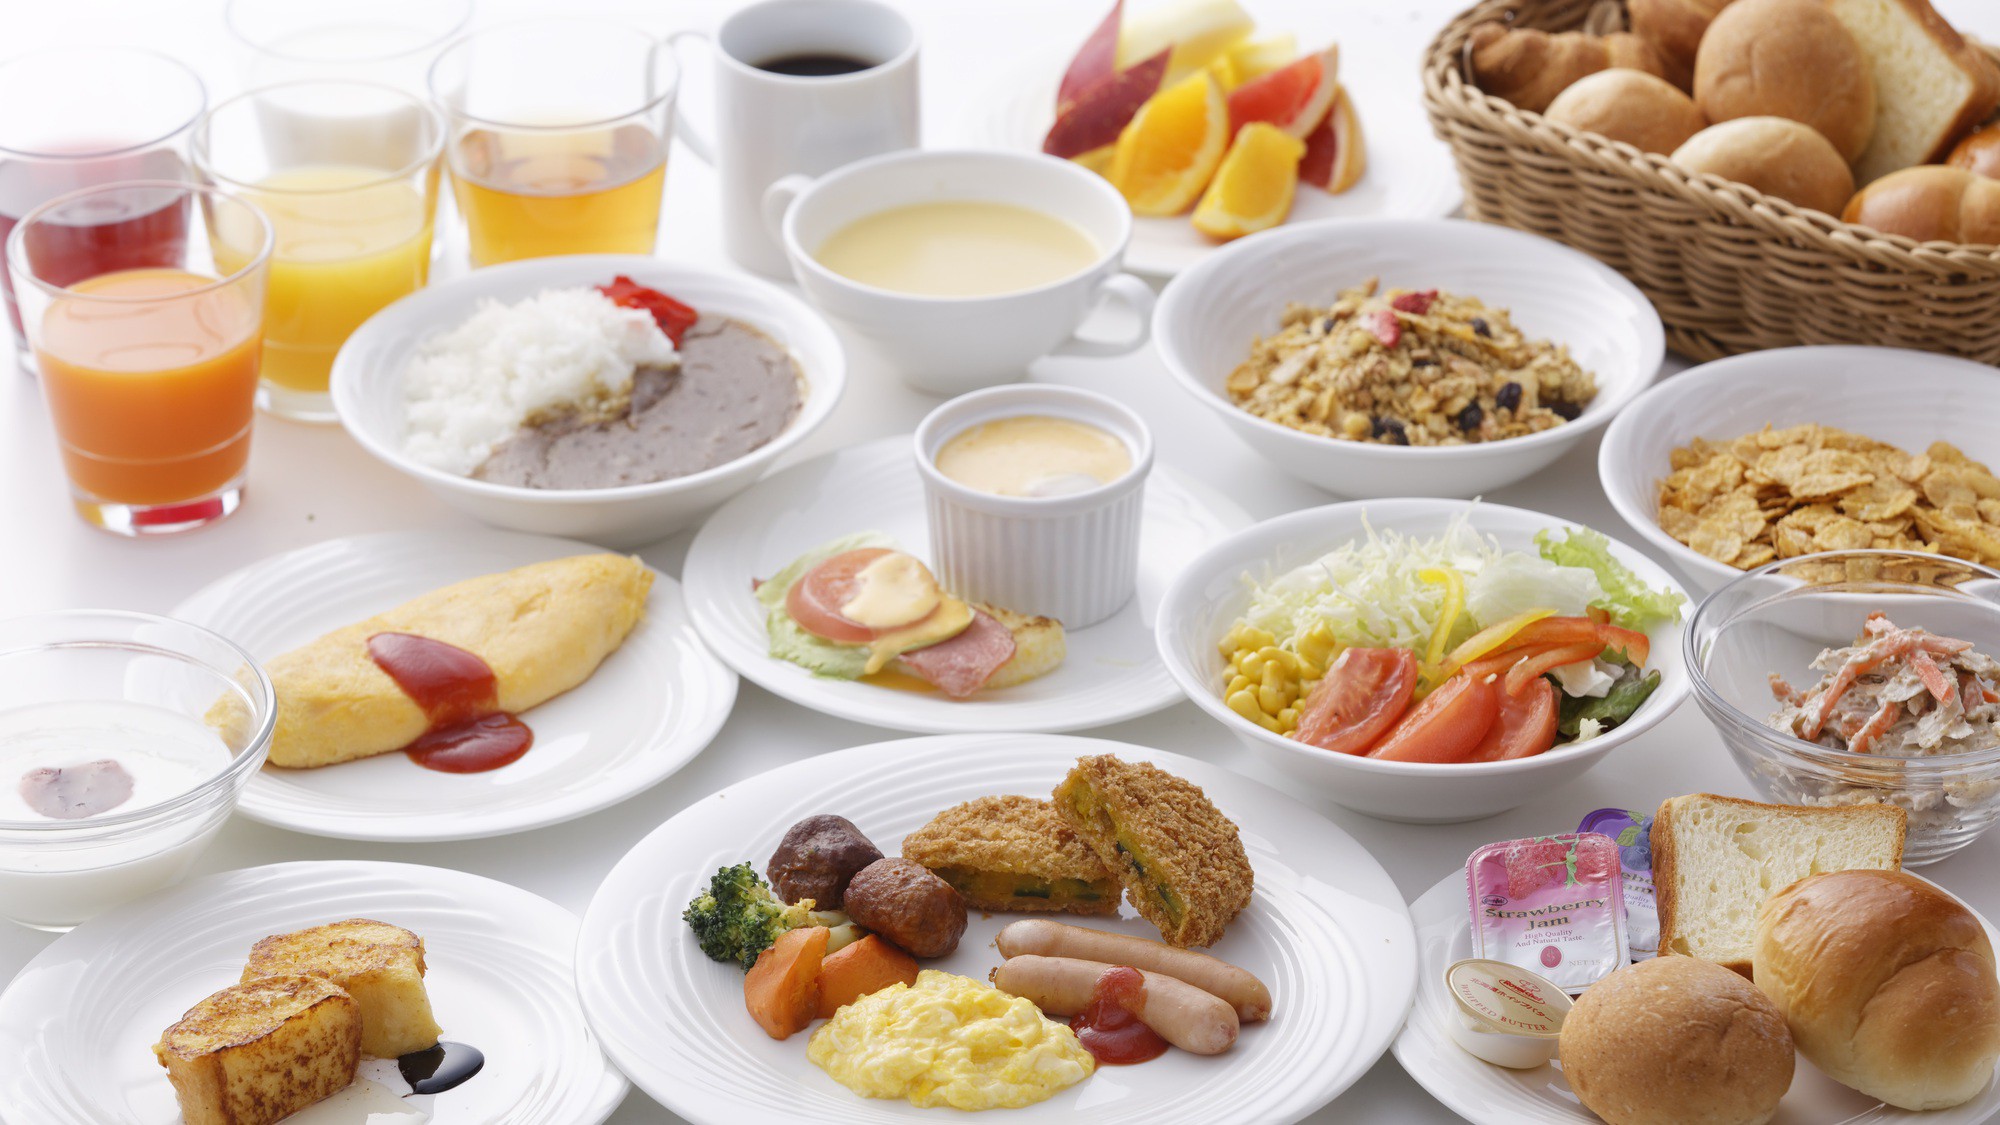 博多名物をはじめ九州各地の名物料理から定番メニューまでフォルツァらしさ溢れる元気朝食をご用意